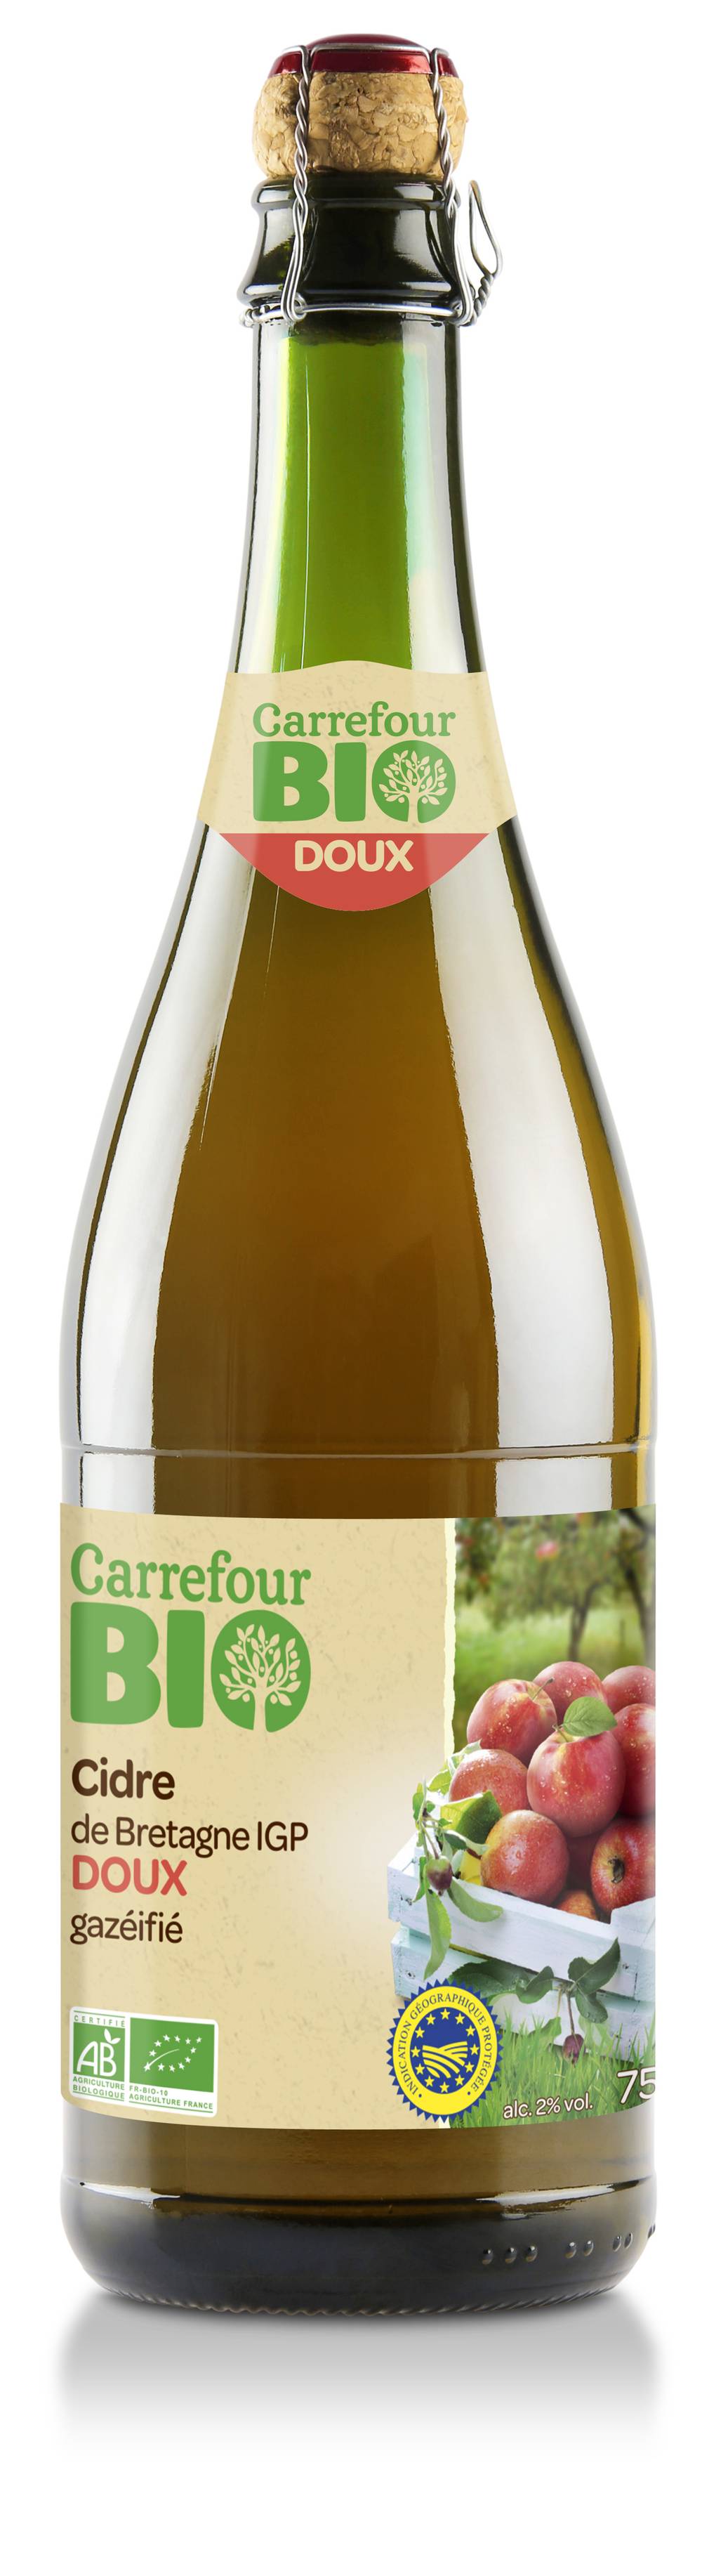 Carrefour Bio - Cidre de bretagne doux IGP (750 ml)